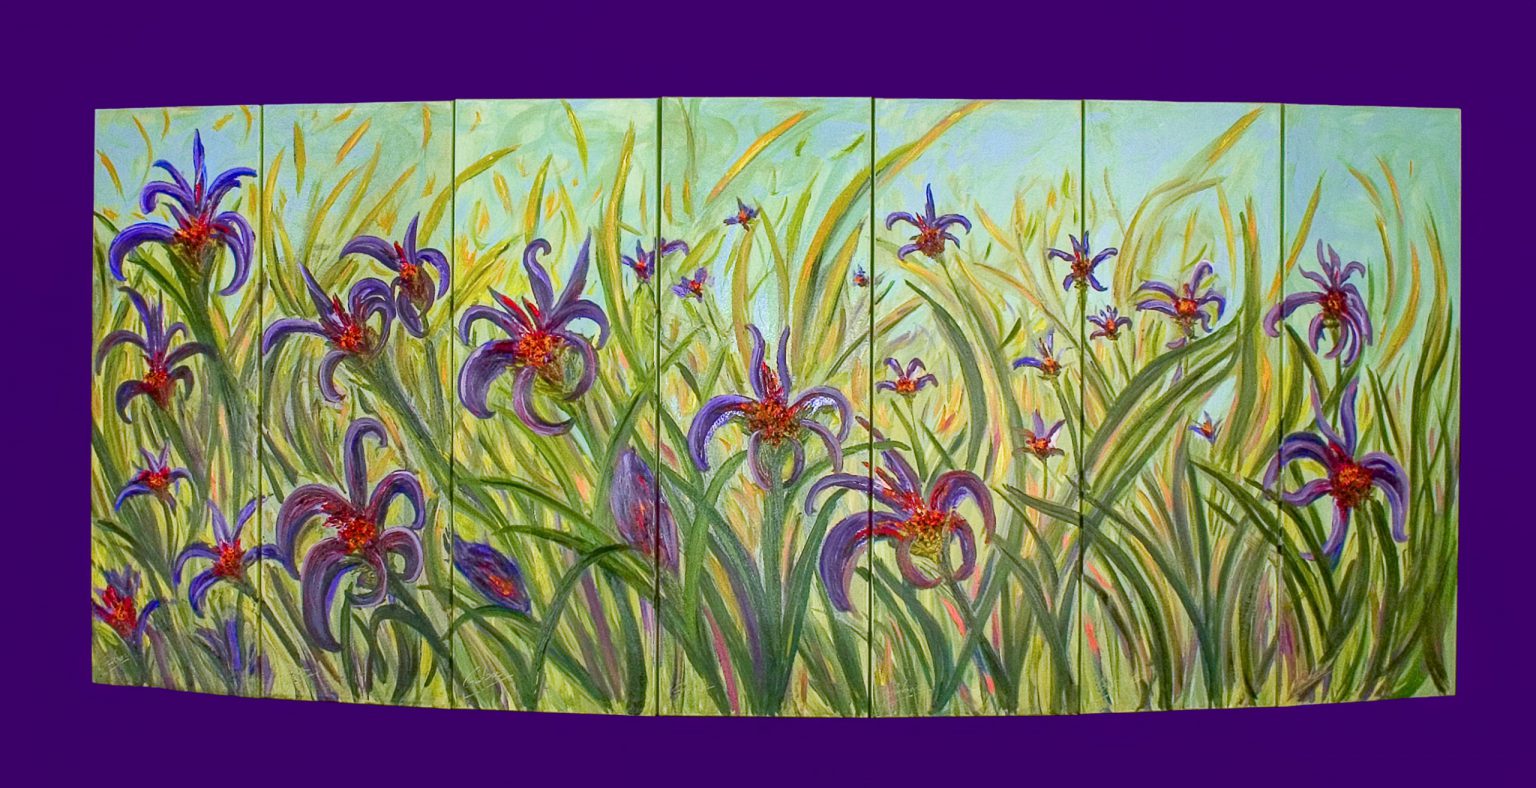 Antoine Gaber avec sa peinture de style convexe intitulée ” Field of Wild Mauve Irises” présenté pendant la Biennale Internazionale dell’Arte Contemporanea 2005